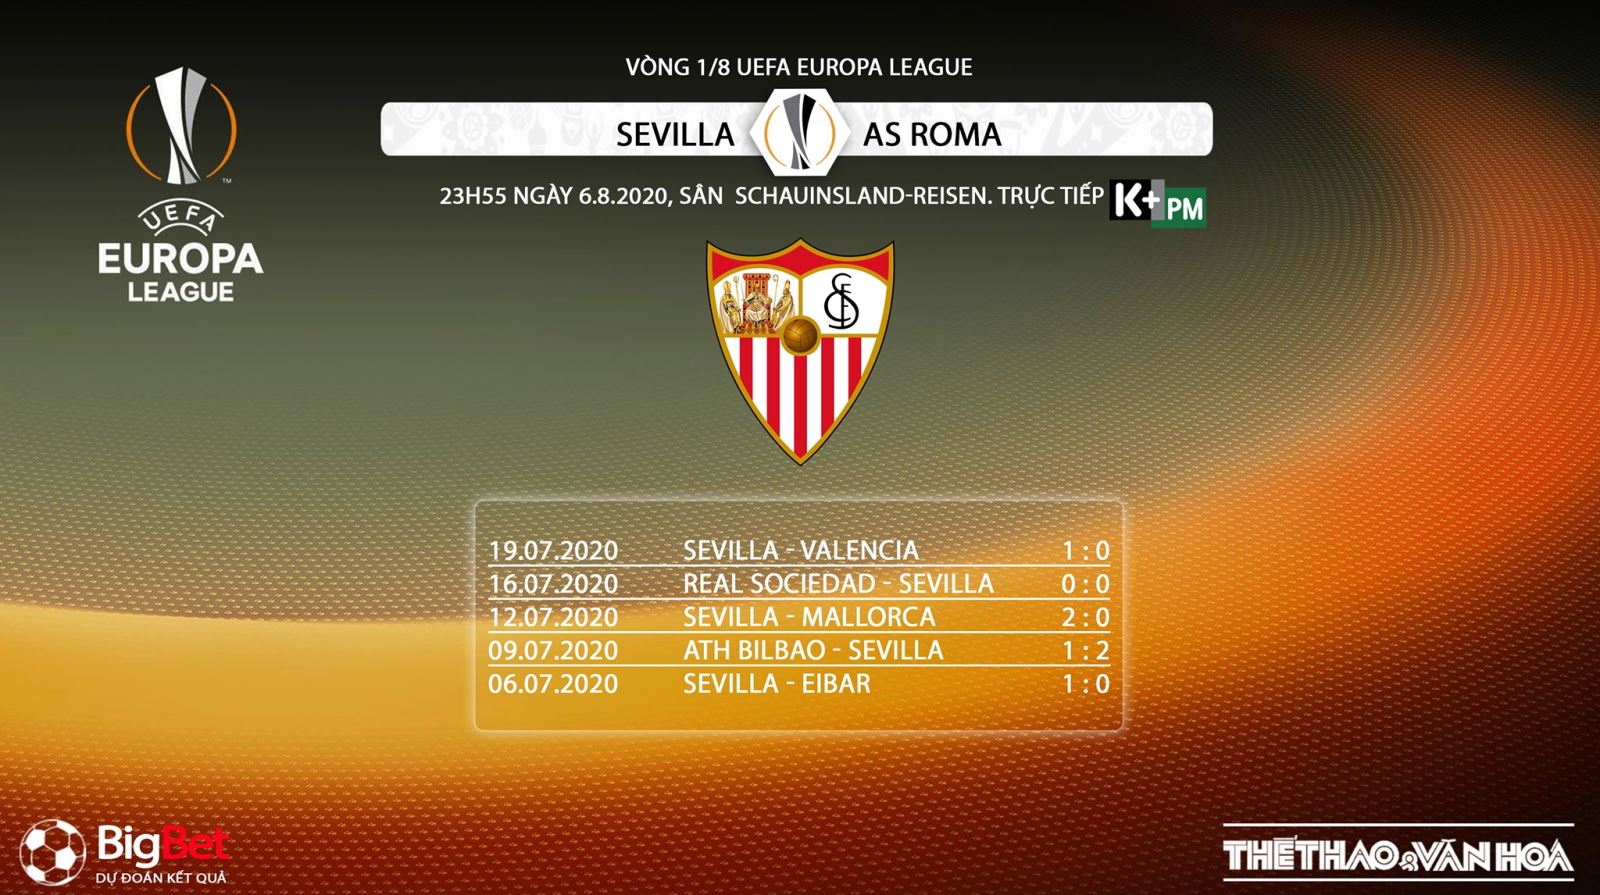 Sevilla vs Roma, soi kèo Sevilla vs Roma, kèo bóng đá Sevilla vs Roma, kèo bóng đá, soi kèo, kèo bóng đá, trực tiếp Sevilla vs Roma